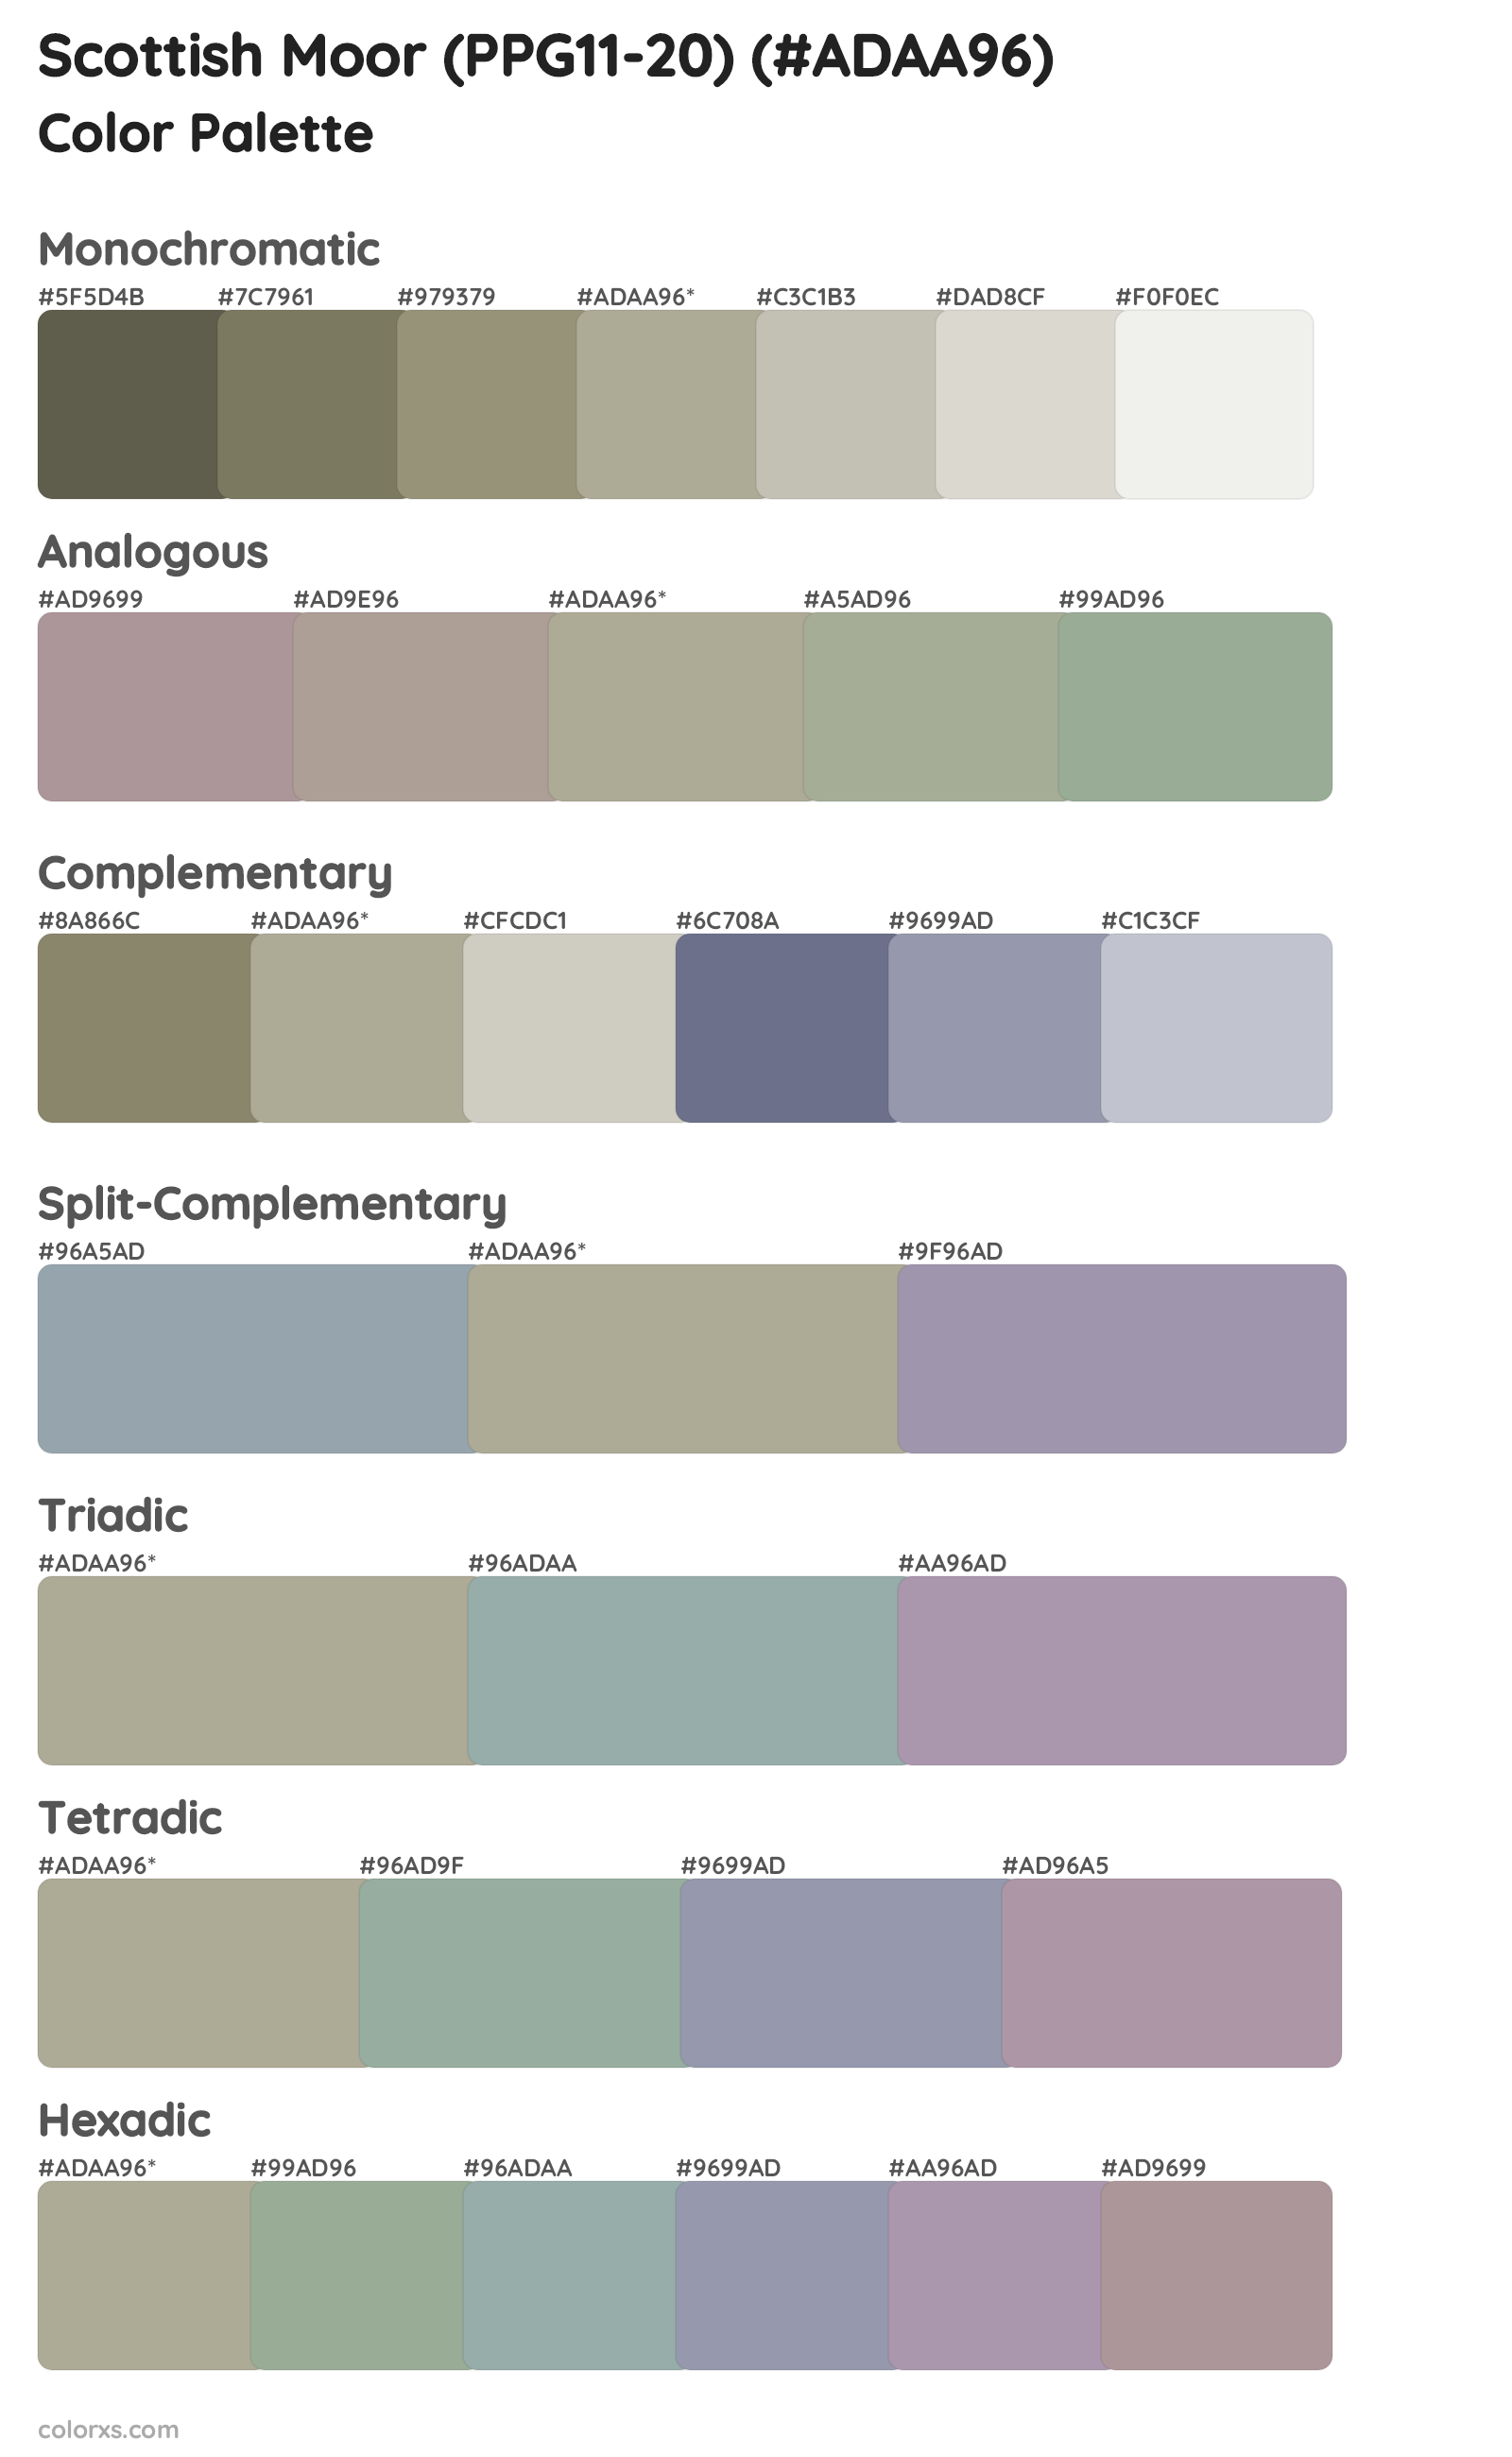 Scottish Moor (PPG11-20) Color Scheme Palettes